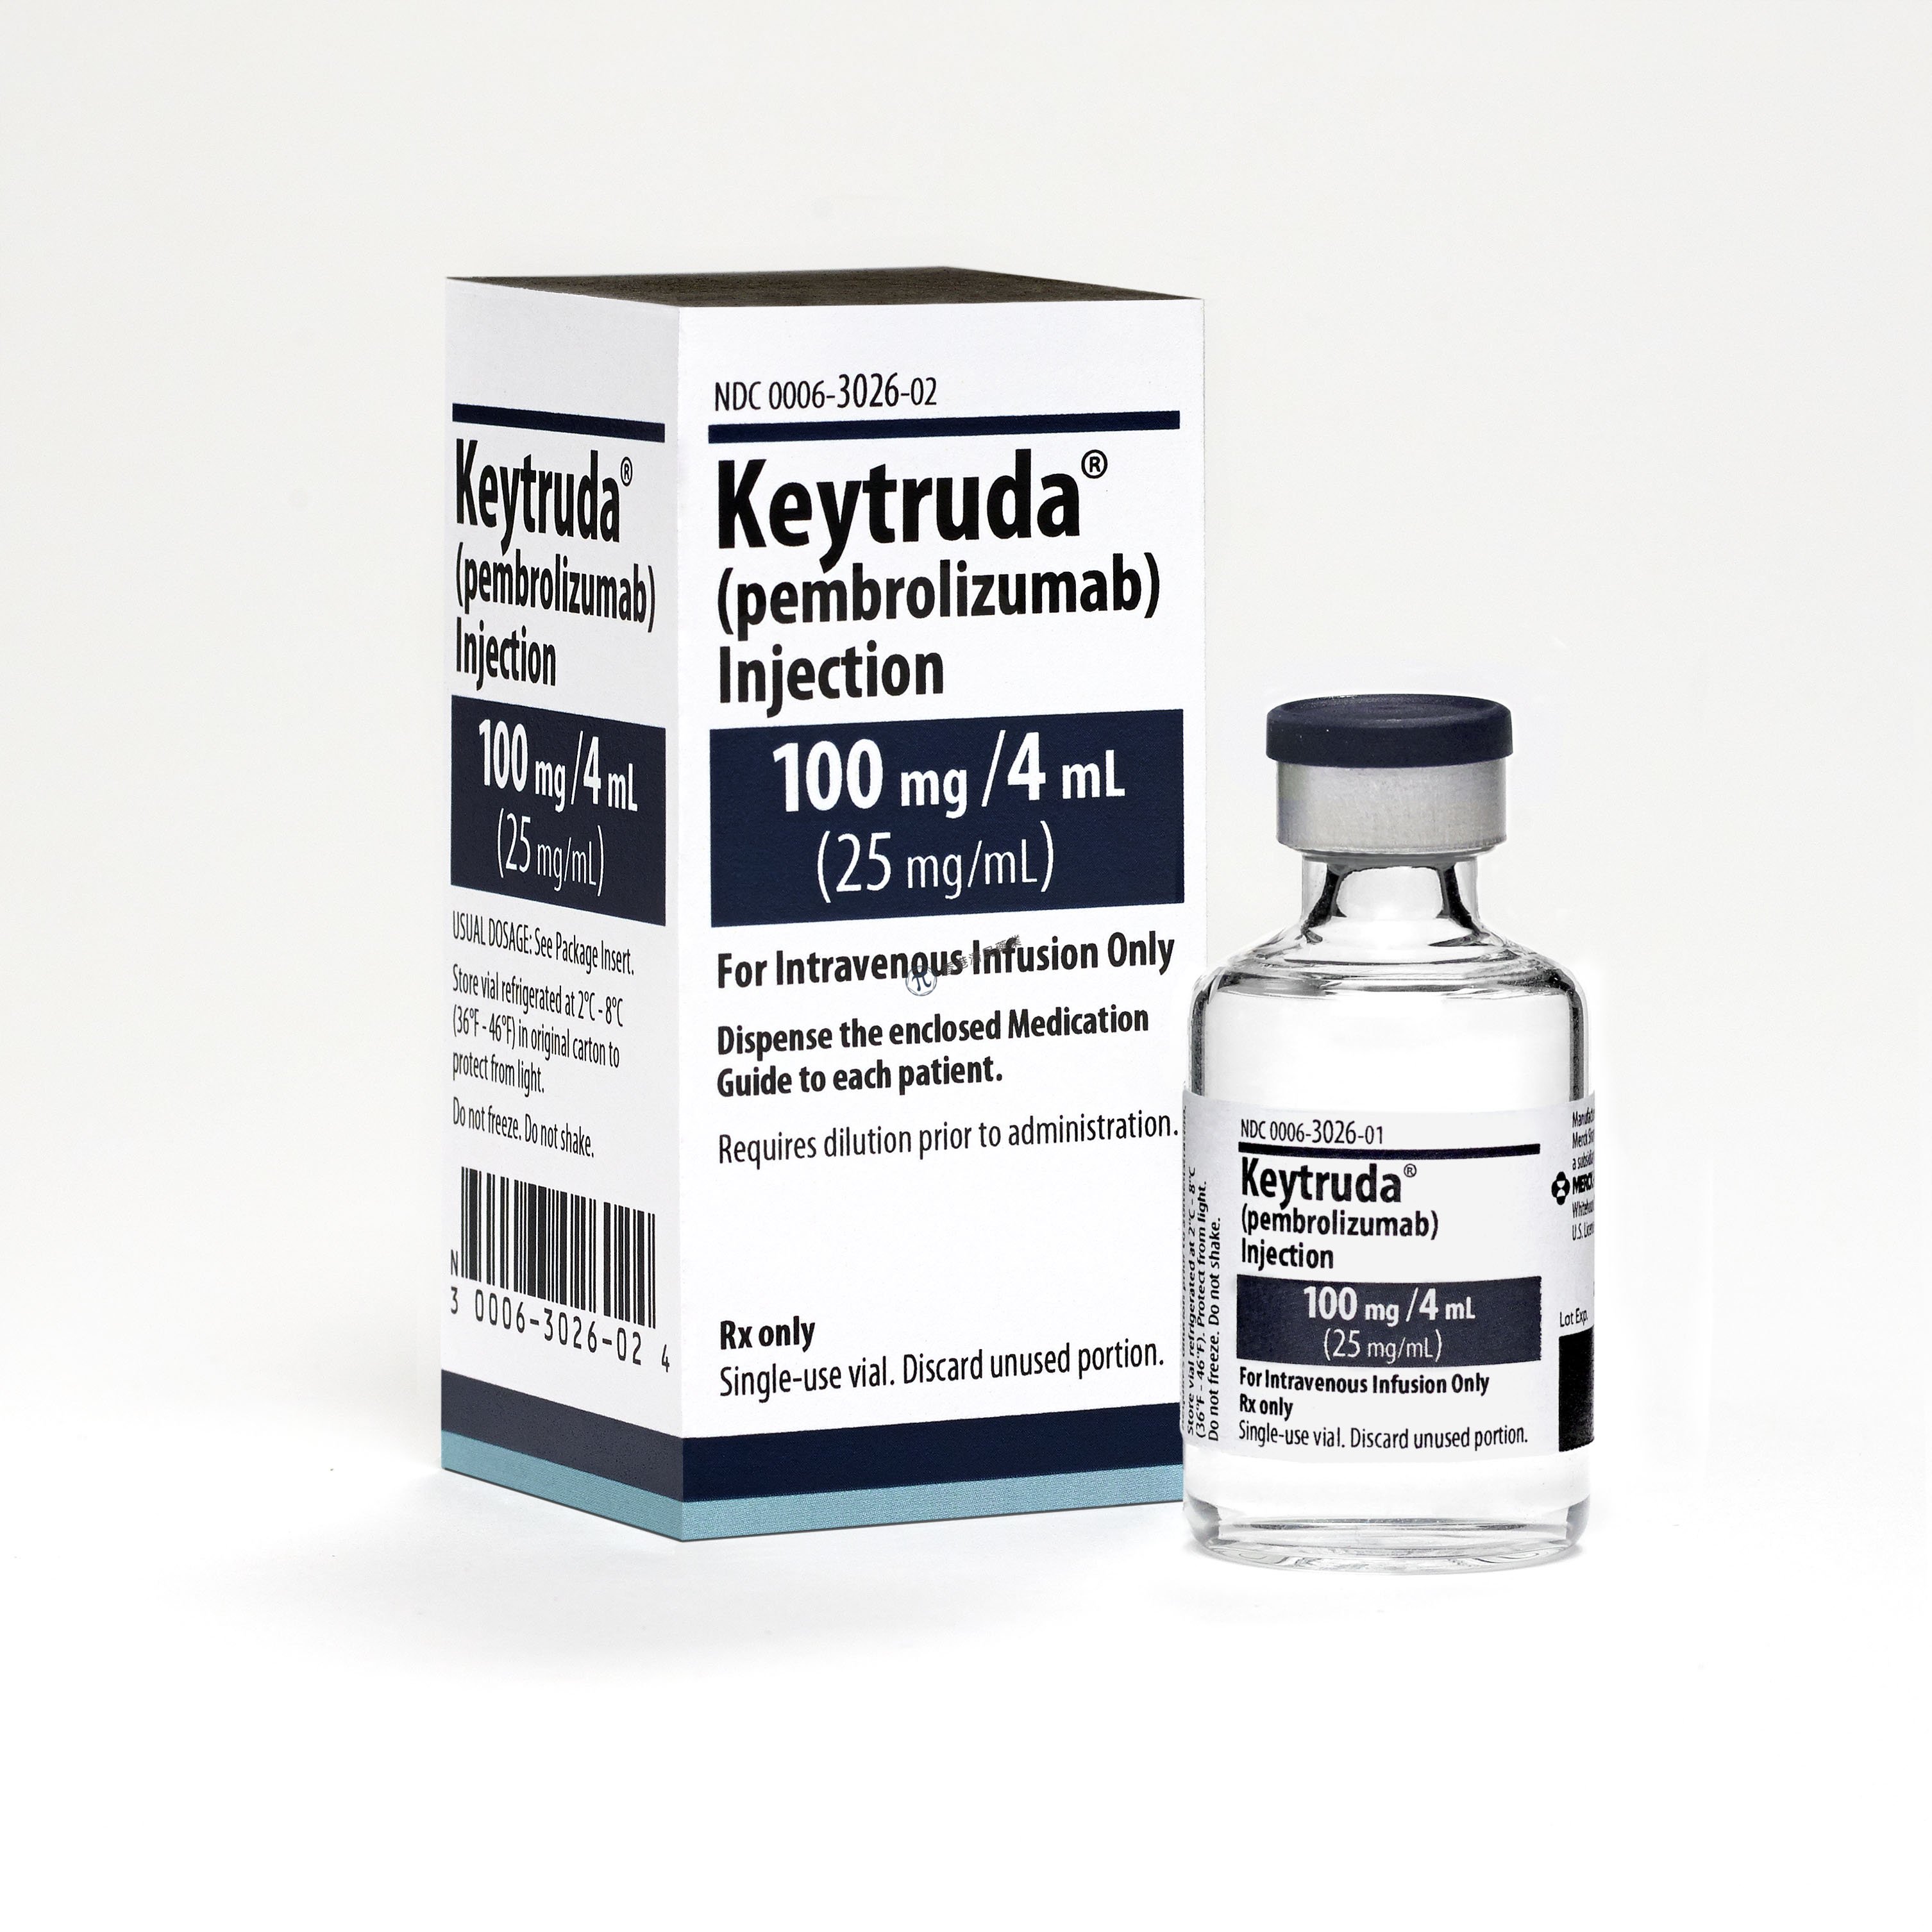 美国FDA寻求批准单剂pbrobrolizumab (Keytruda)用于选择msi-H/dmmr晚期子宫内膜癌